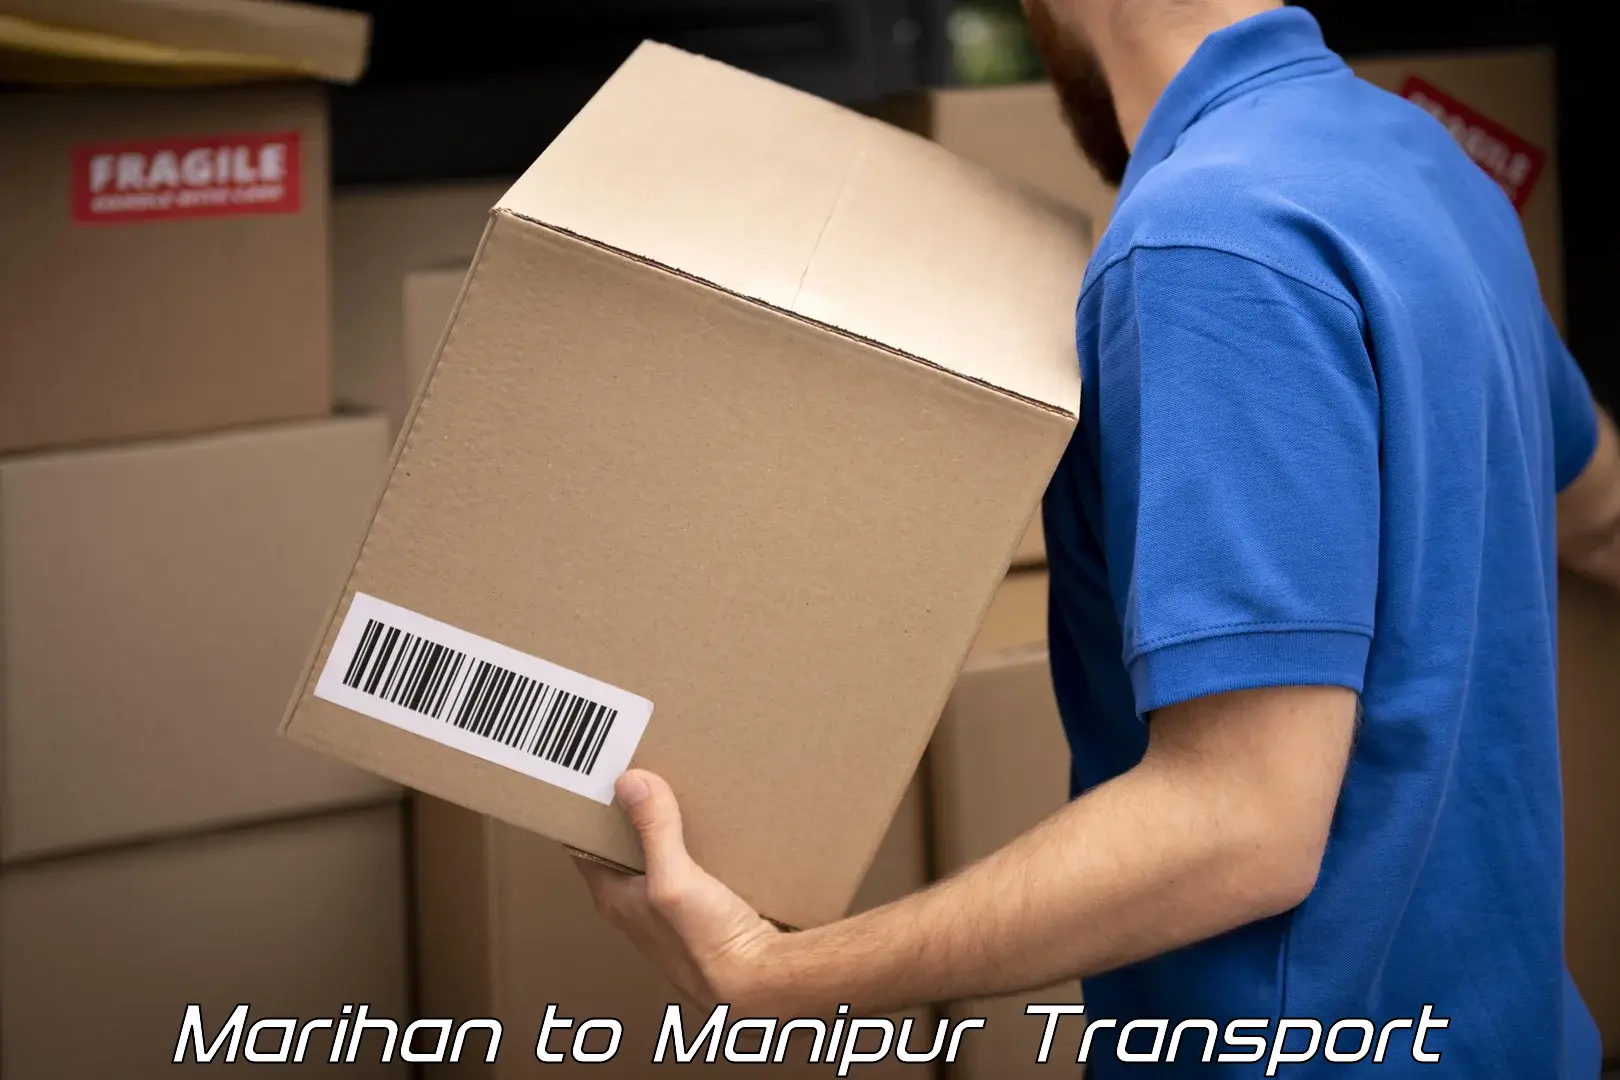 Shipping services Marihan to Moirang